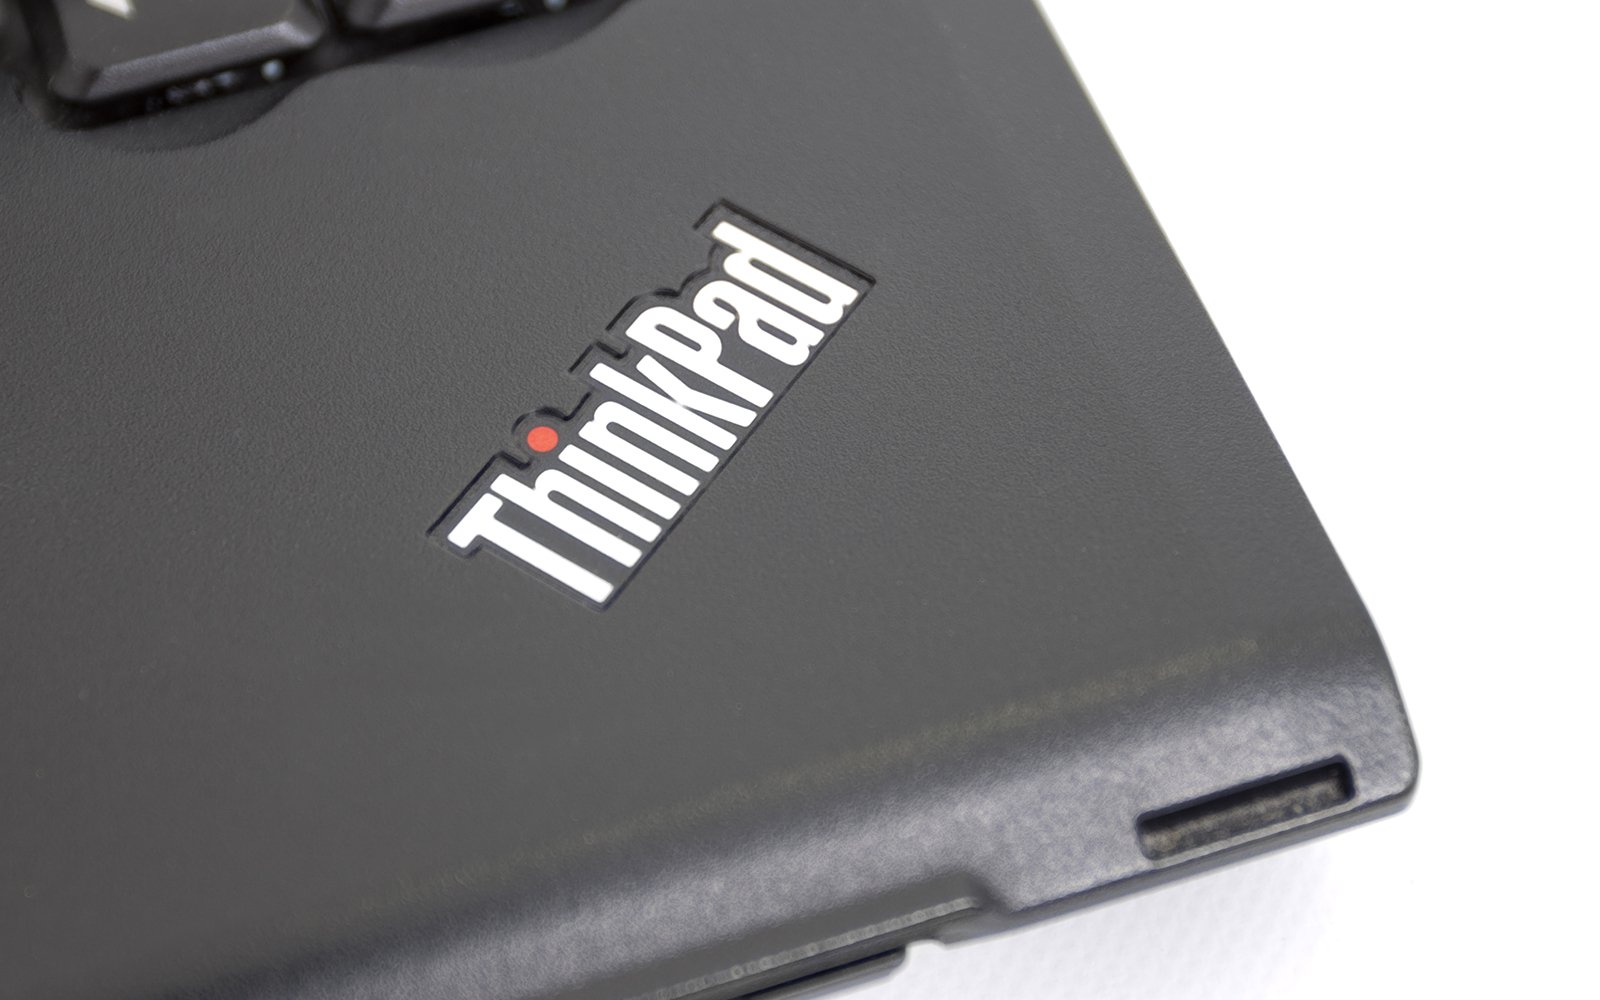 Lenovo Thinkpad X201 Notebook (iStock)